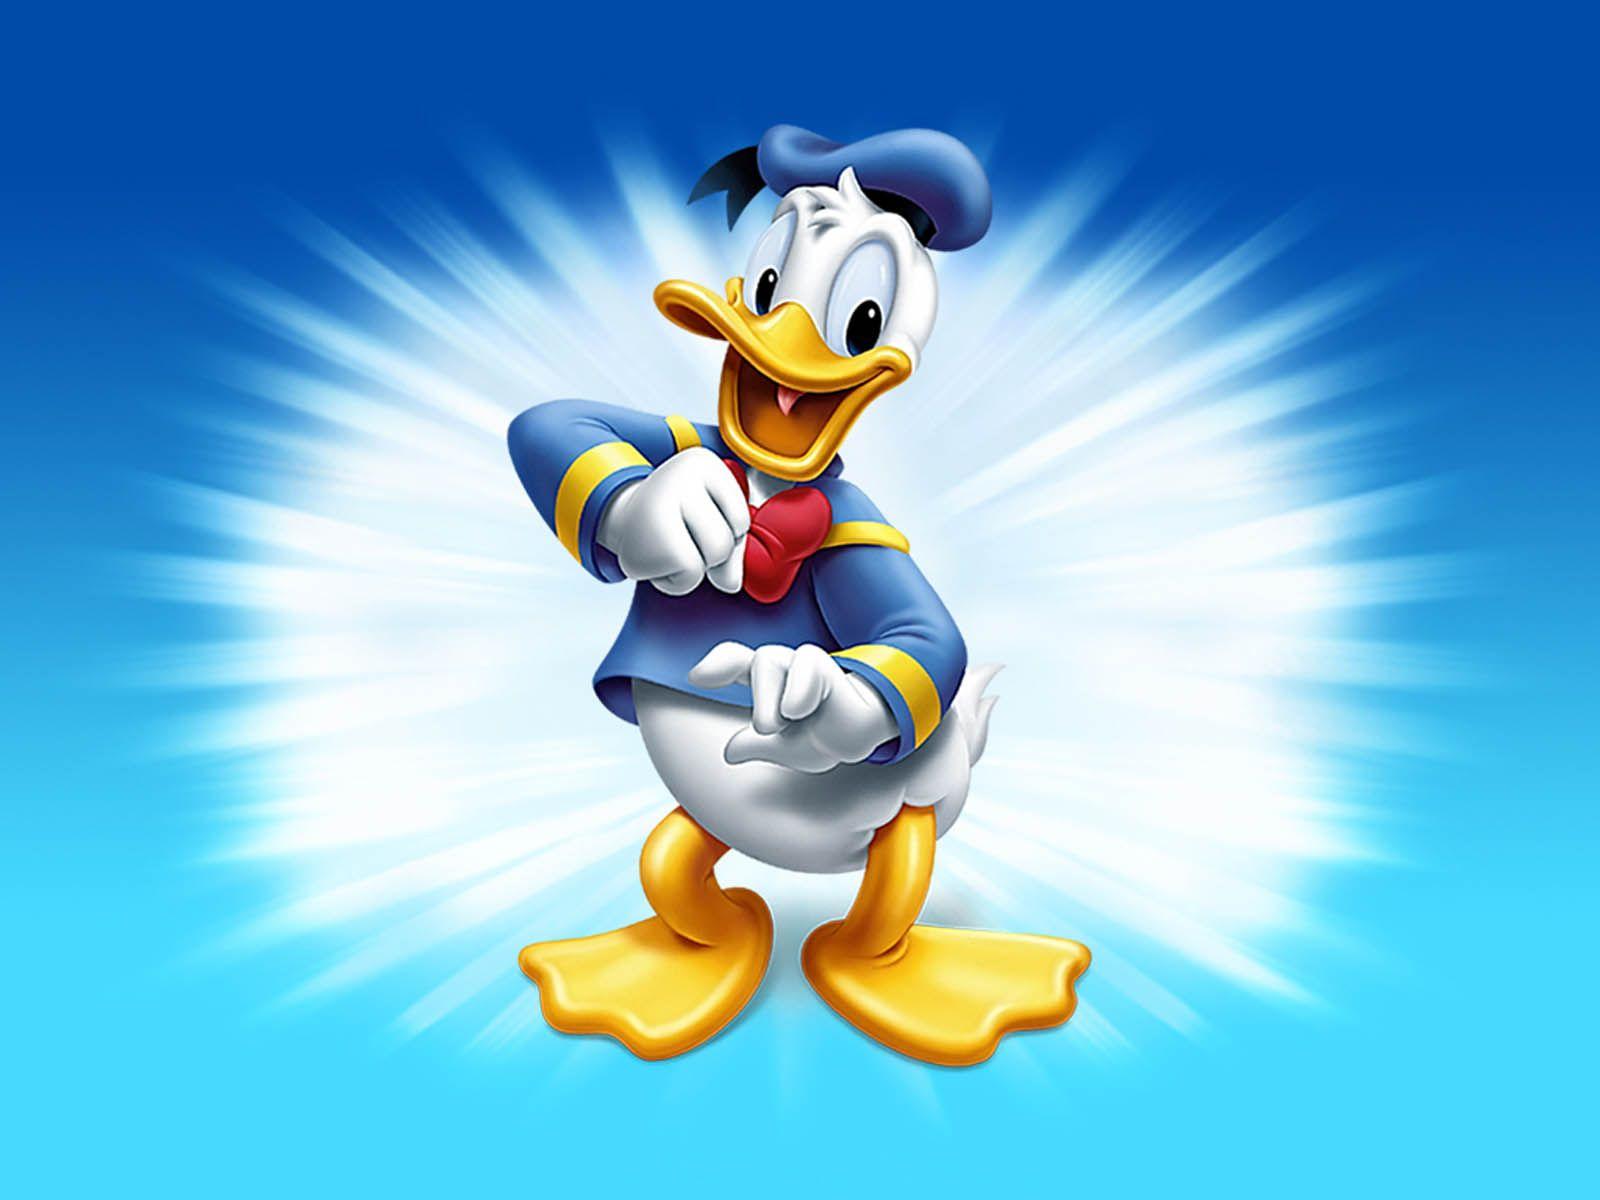 DONALD DUCK HD WALLPAPERS. Cute cartoon wallpaper, Donald duck